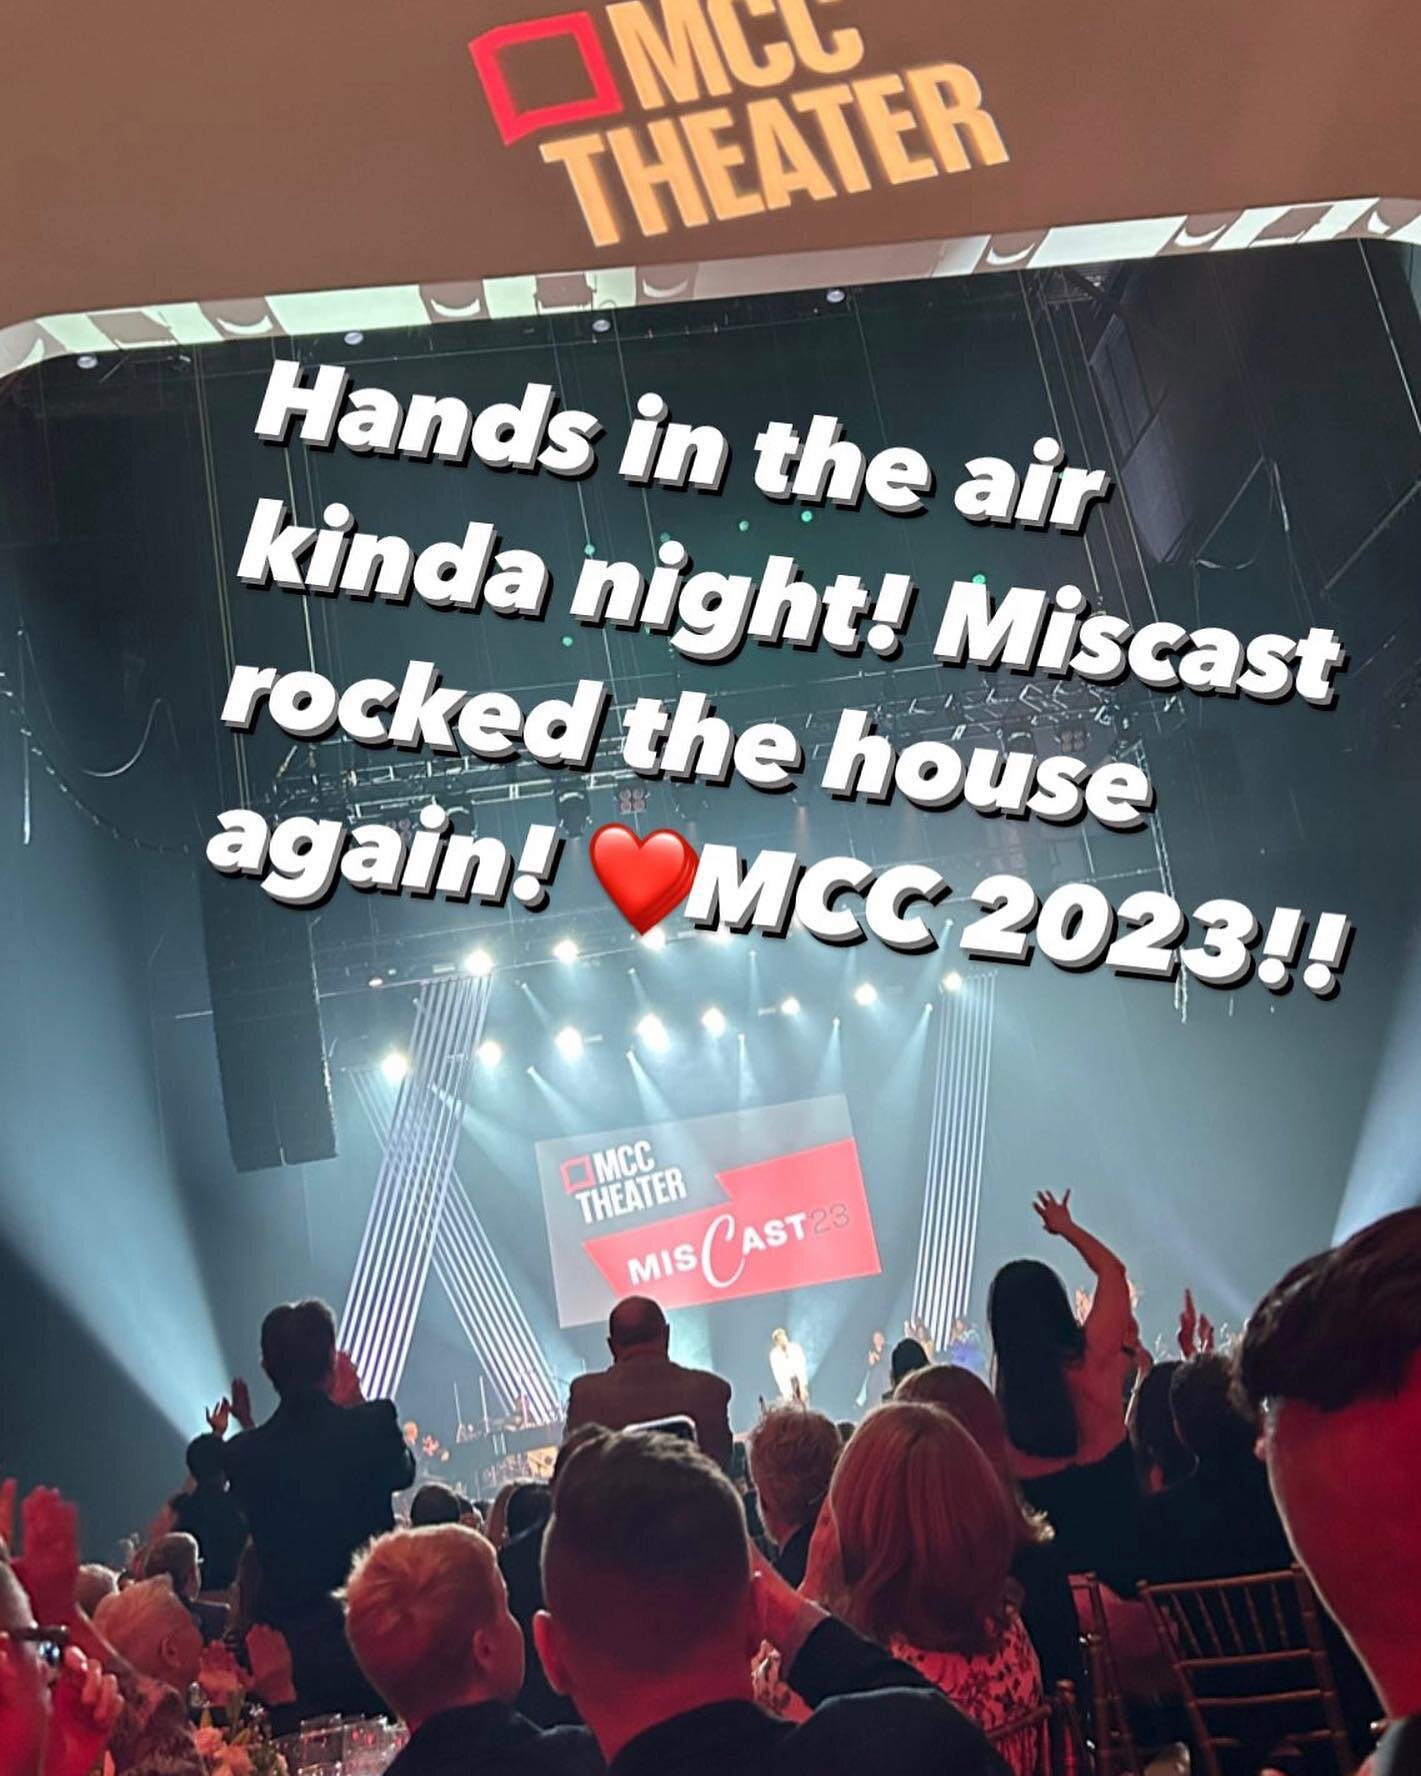 @MCC #miscast 2023